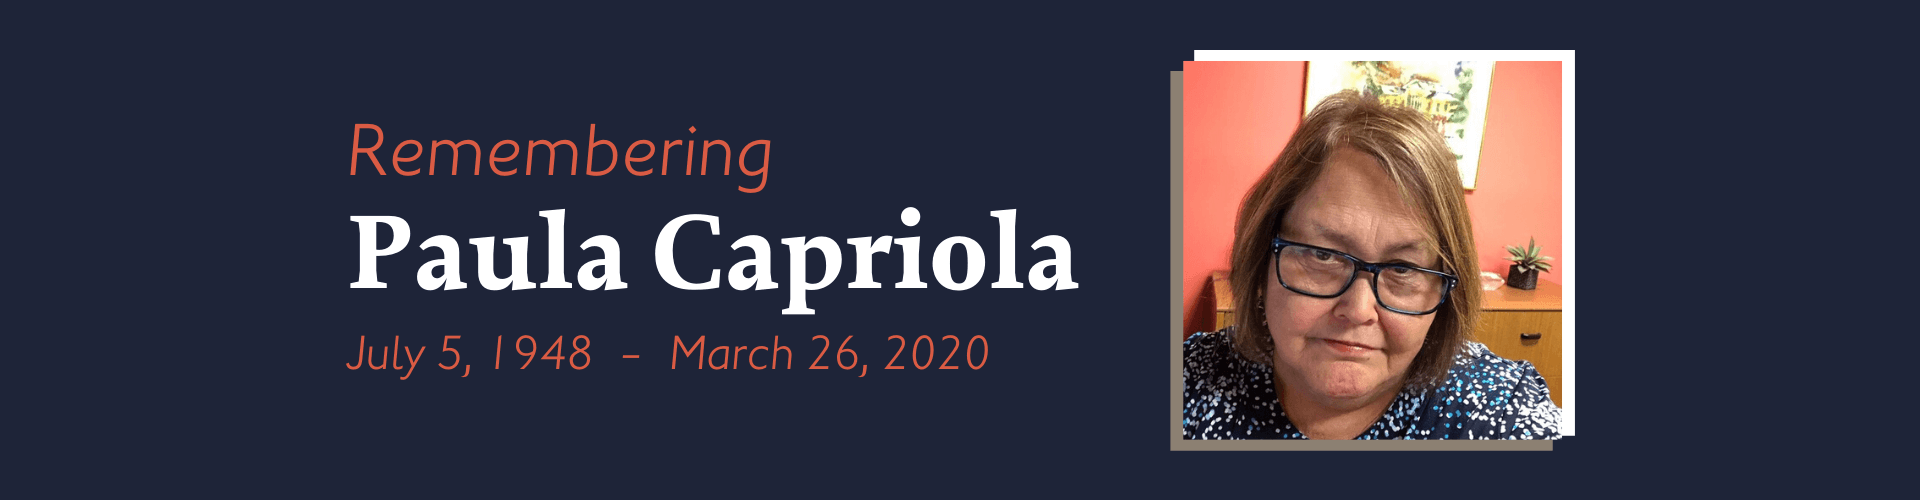 Remembering Paula Capriola